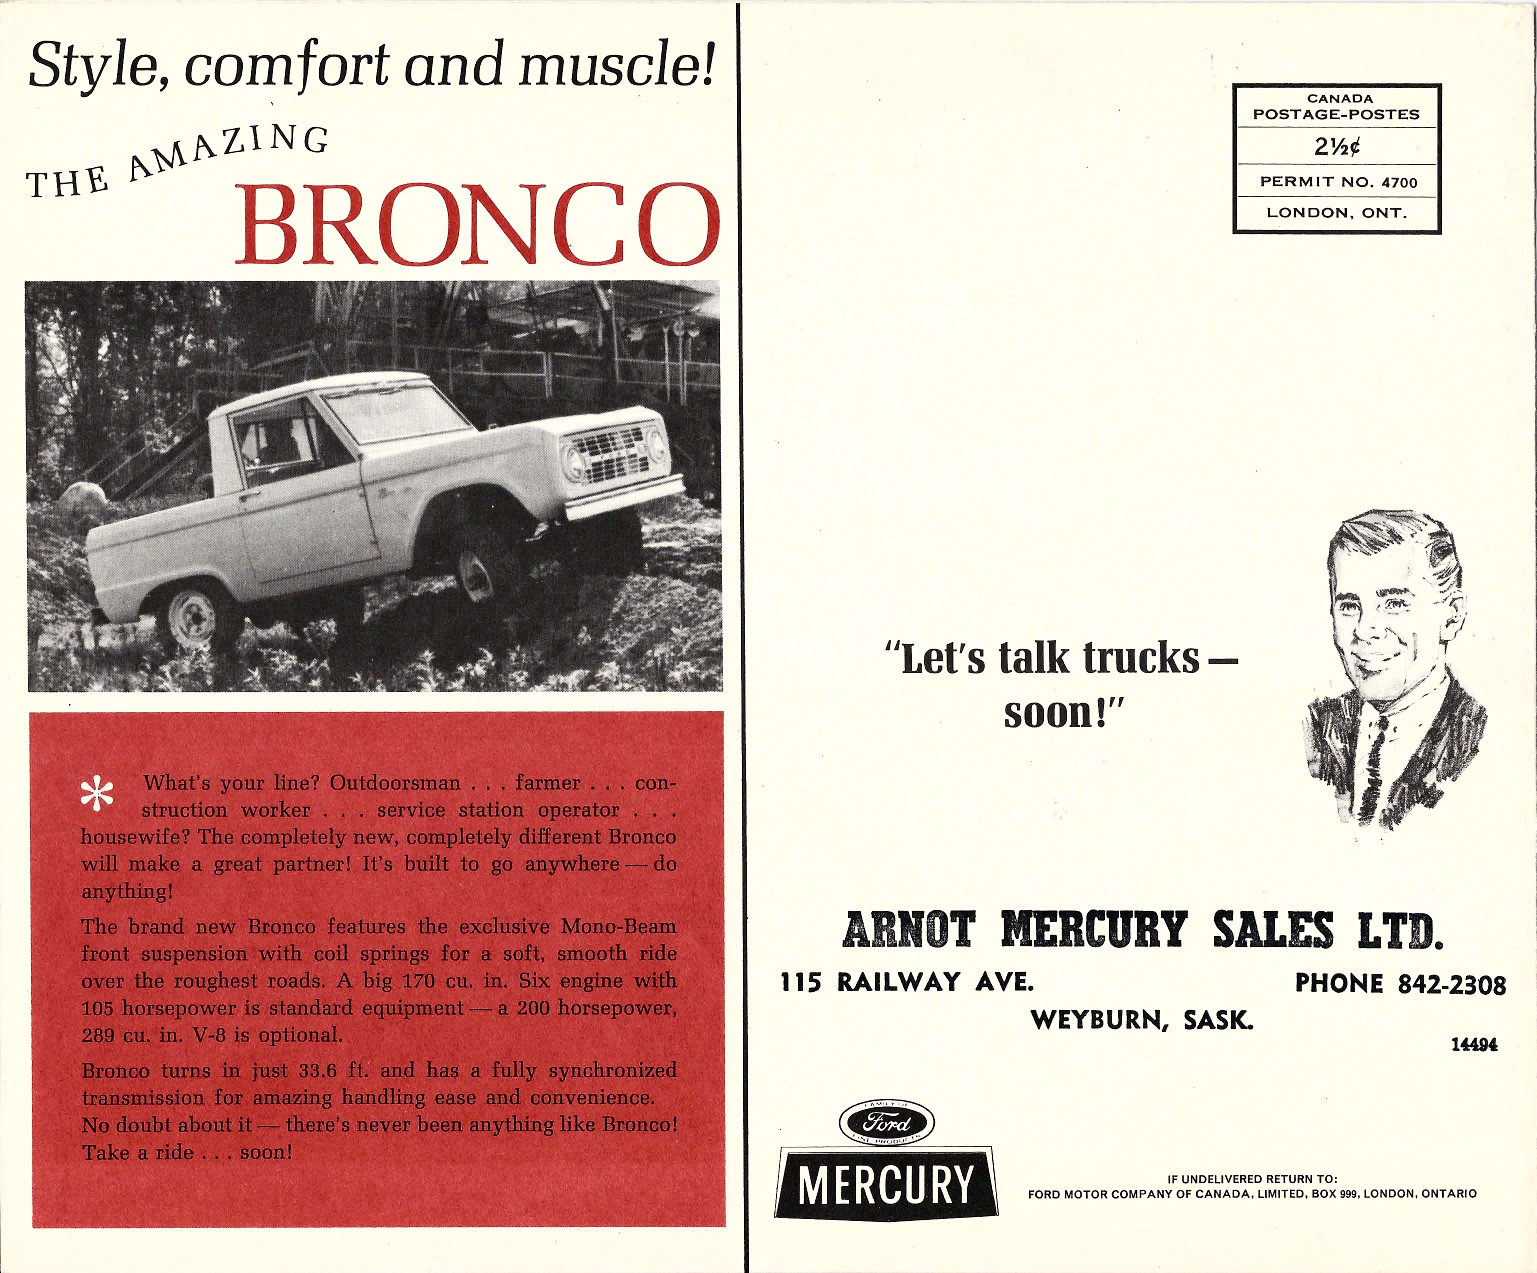 n_1966 Mercury Truck Mailer-04.jpg